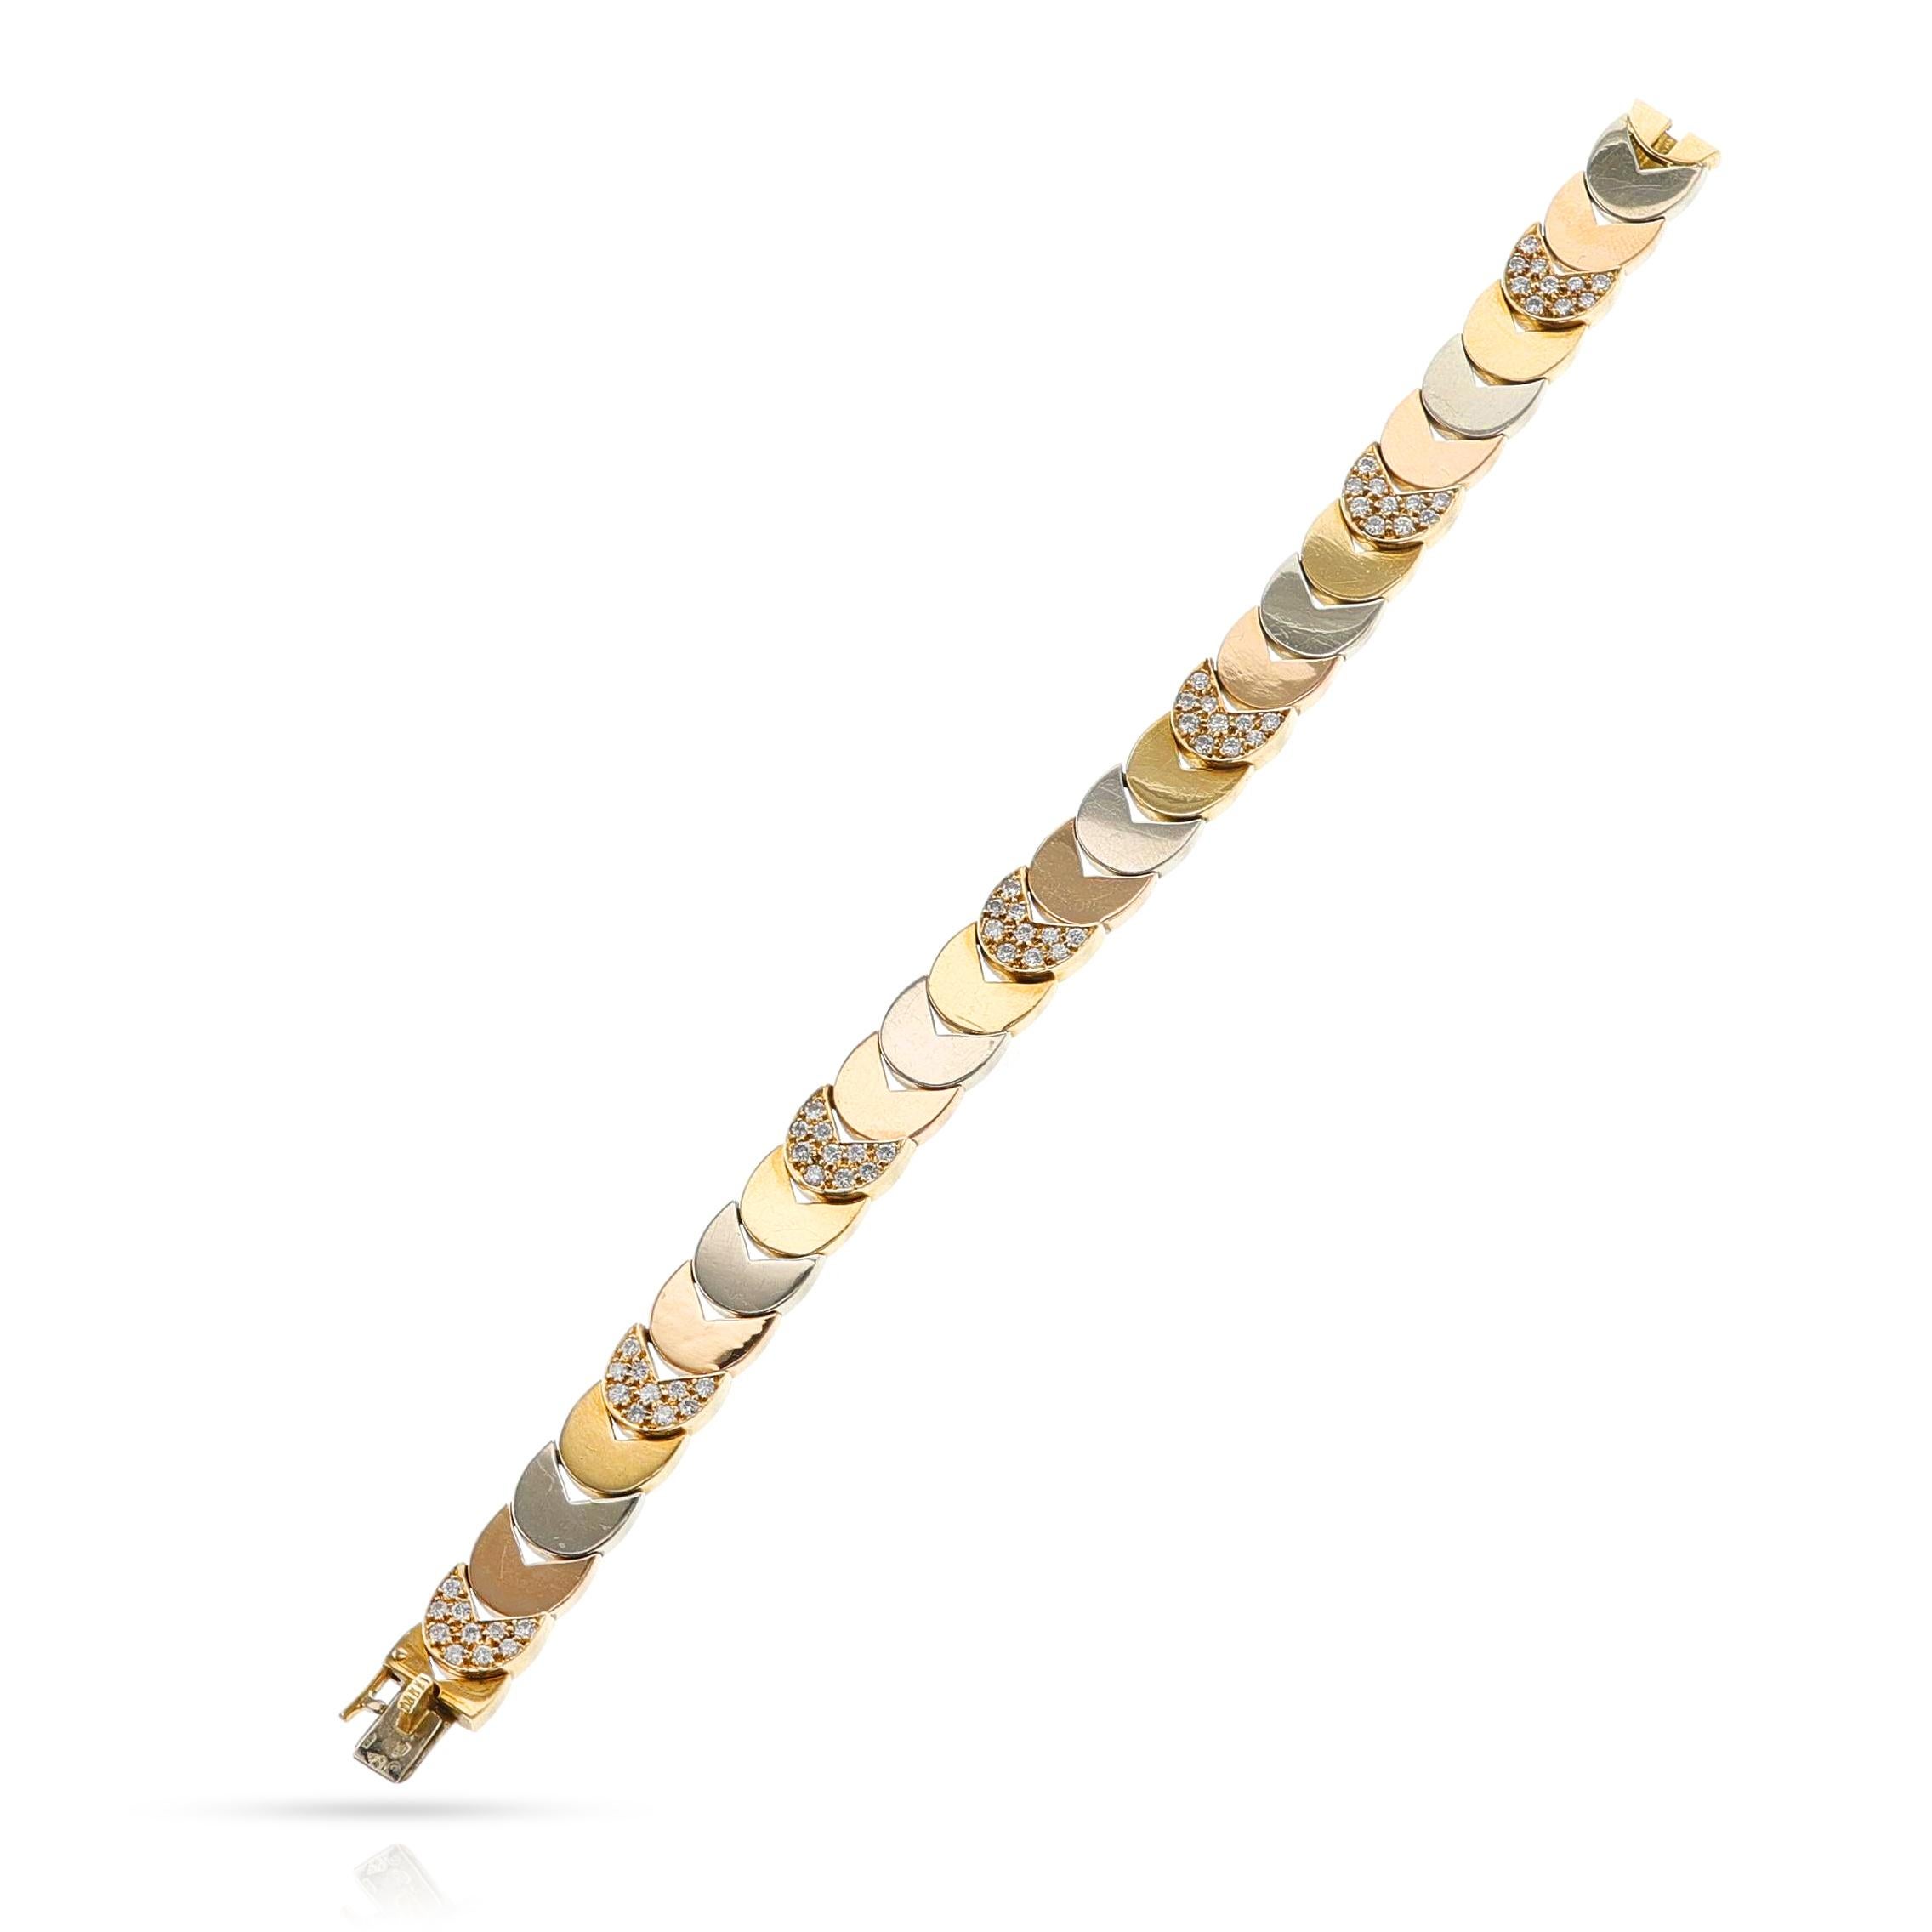 Van Cleef & Arpels Armband aus dreifarbigem Gold und Diamanten von Georges L'enfant, 18k. Länge 7,09 Zoll (18 cm). Das Gesamtgewicht beträgt 37,03 Gramm. Signiert und nummeriert. Jewell's Hallmark: Georges L'enfant.

SKU: 1458-EAJAPLWU